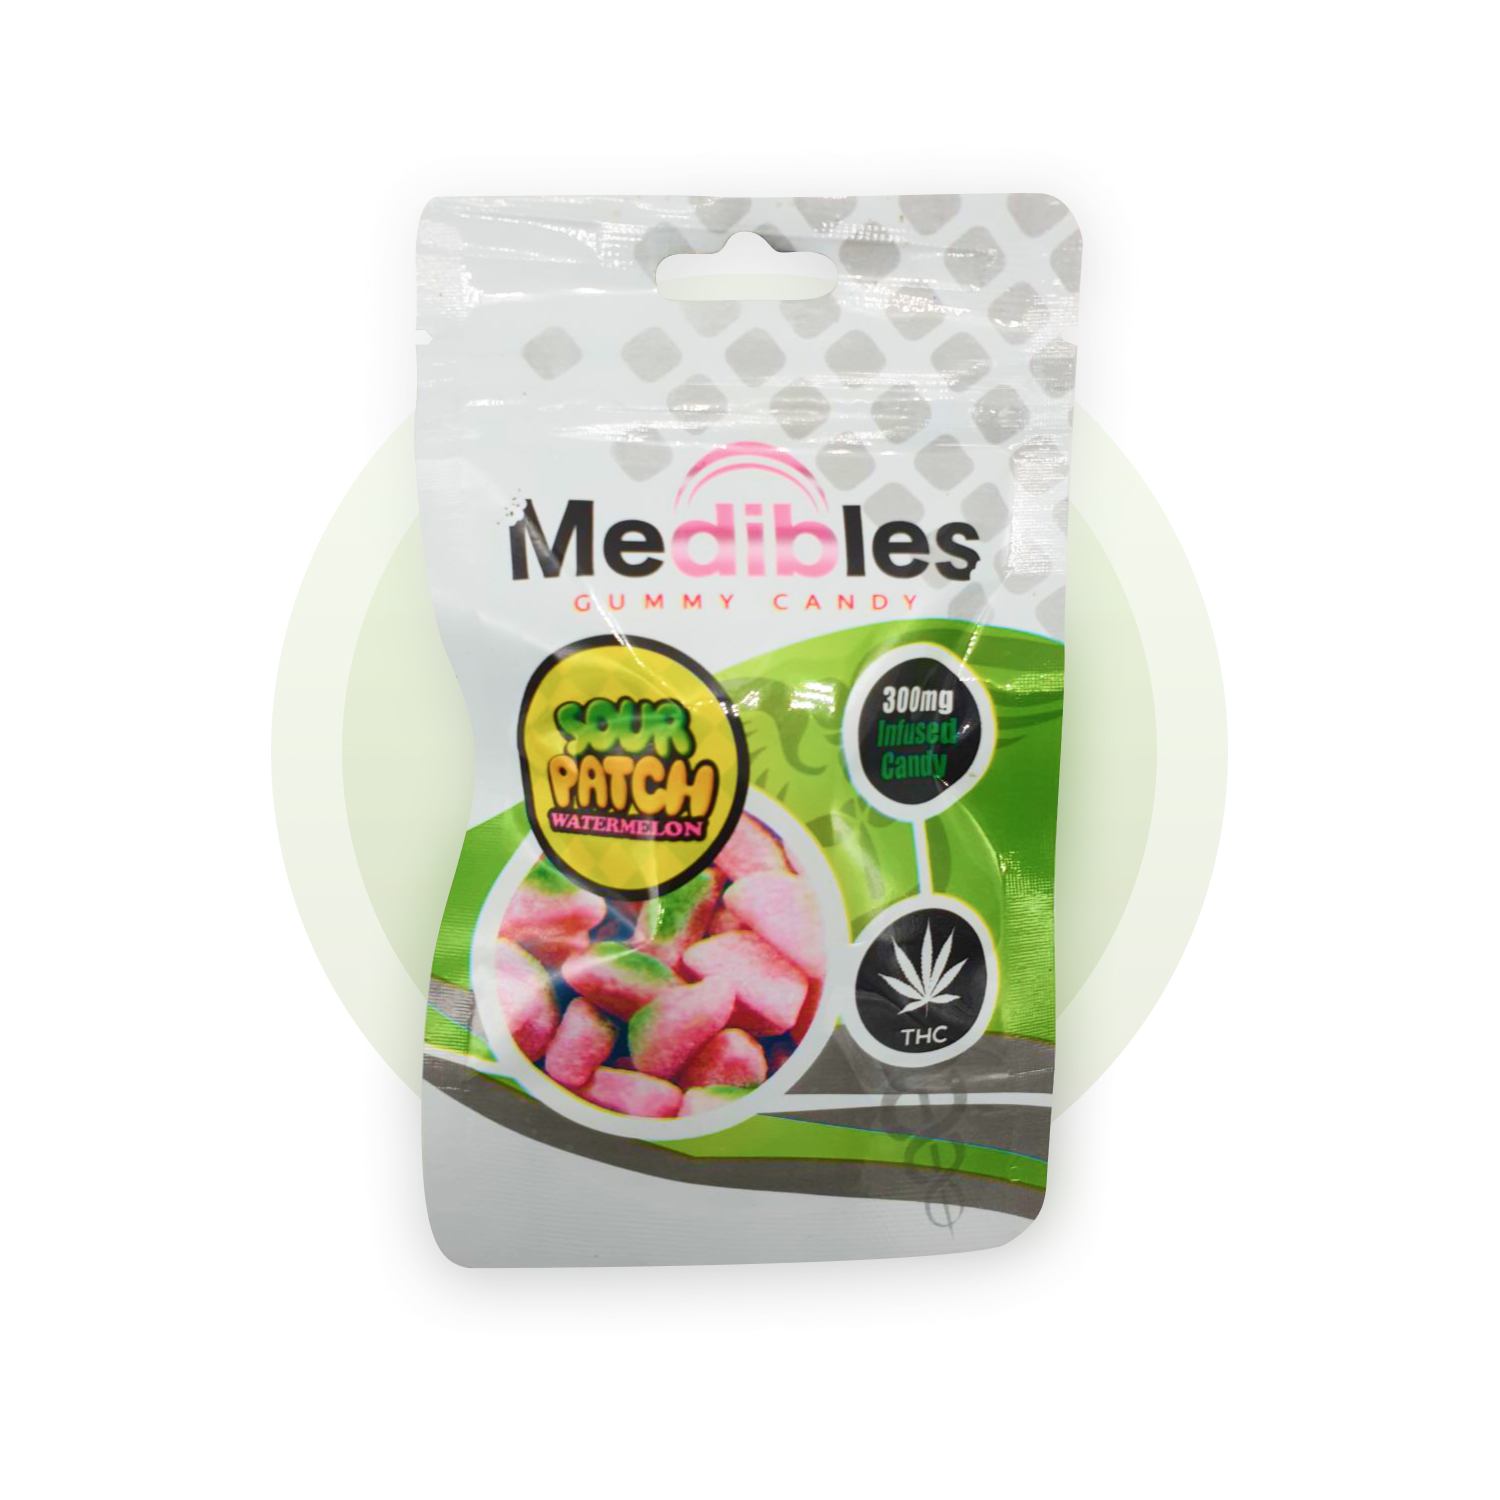 Medibles (Sour Patch) - 300THC